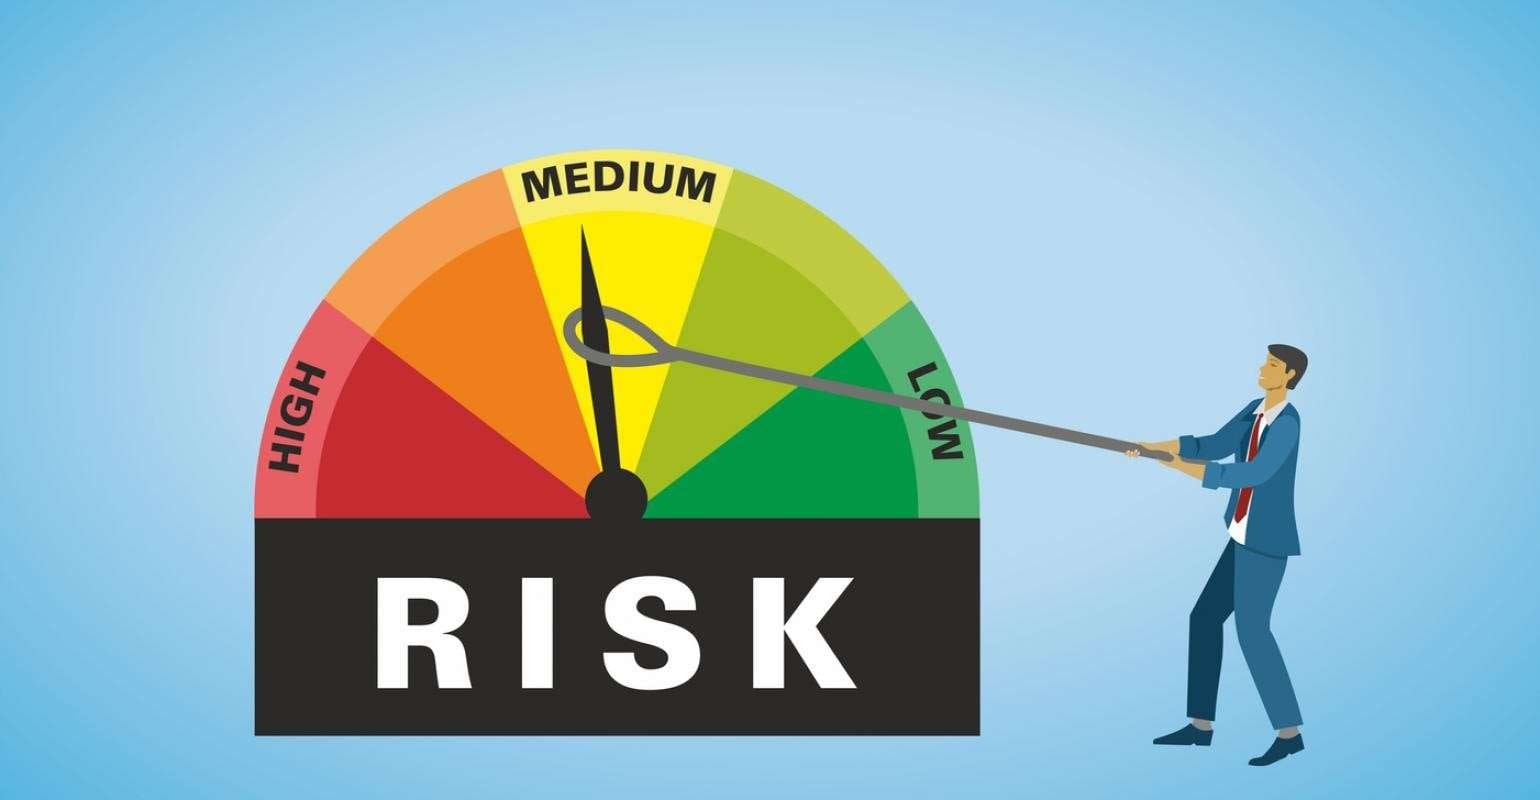 depiction of risk management